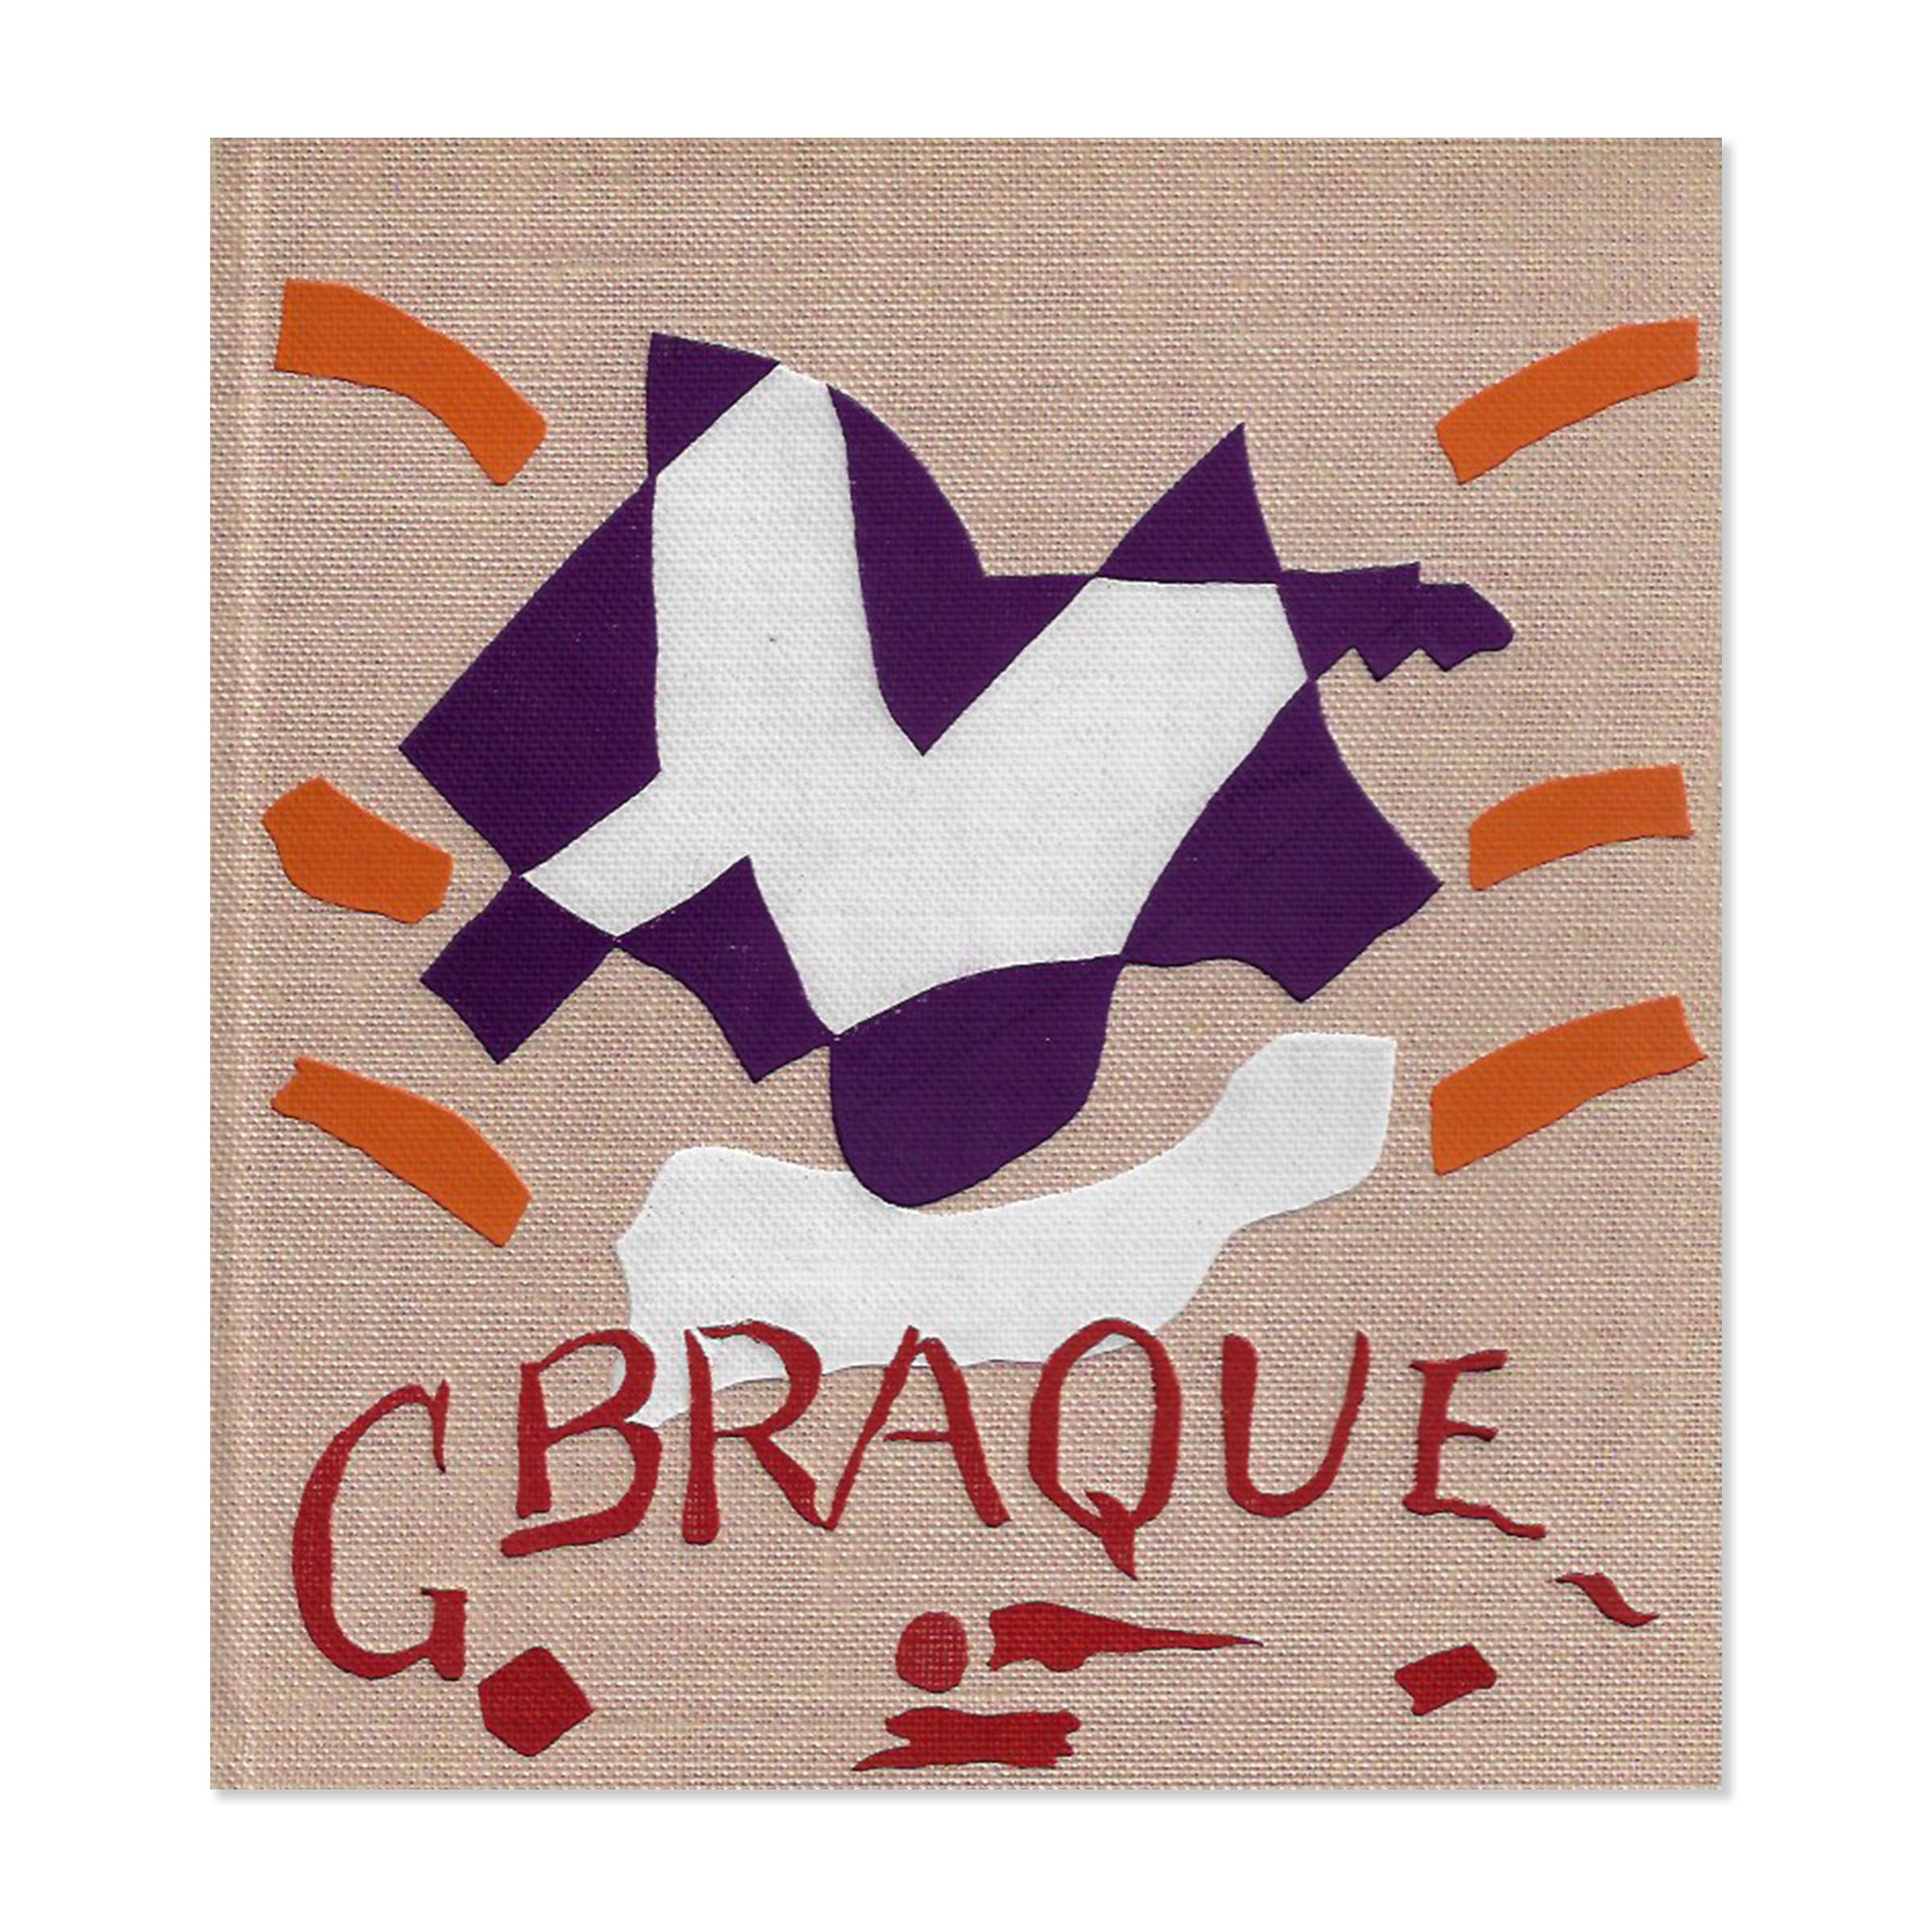 Braque. Catalogue raisonné. Cover view